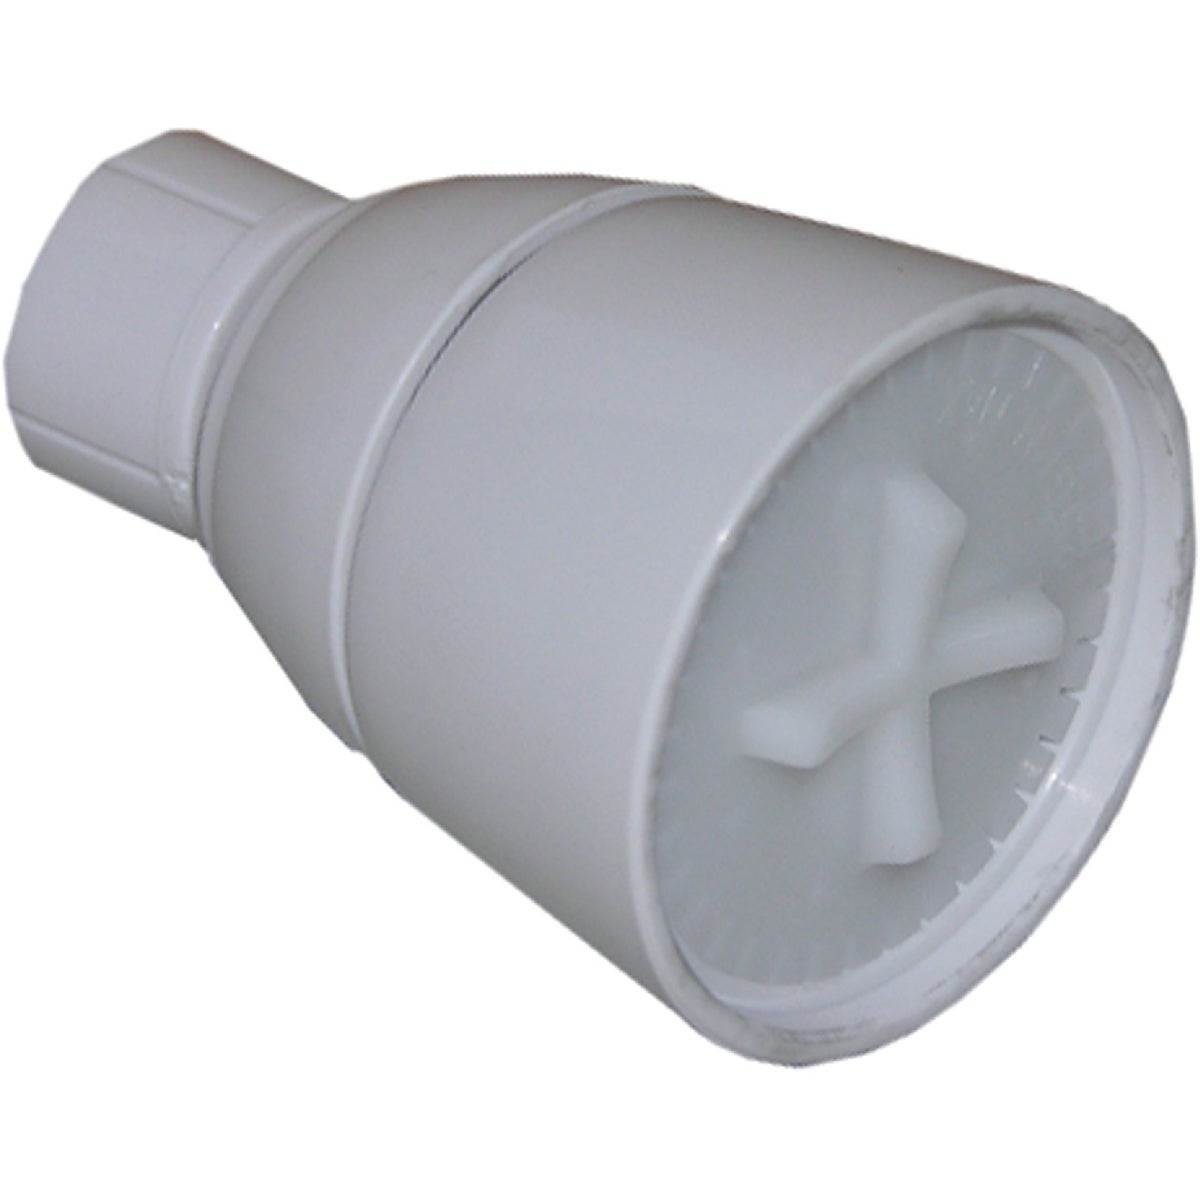 Lasco 1-Spray 2.5 GPM Fixed Showerhead, White